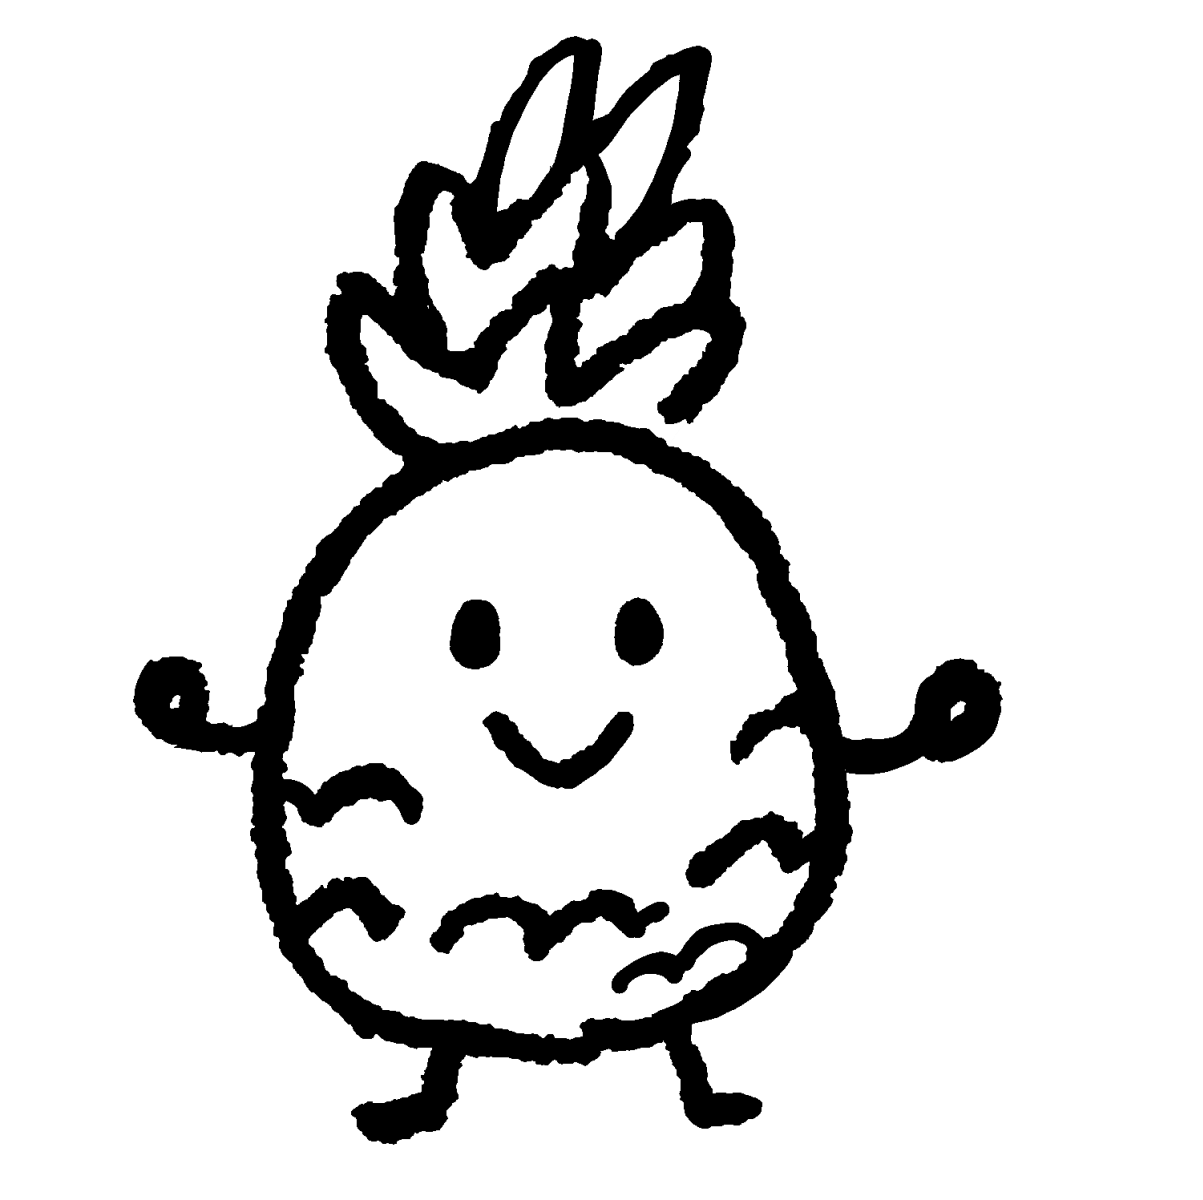 パイナップル（顔つき）のイラスト / Pineapple (with face) Illustration